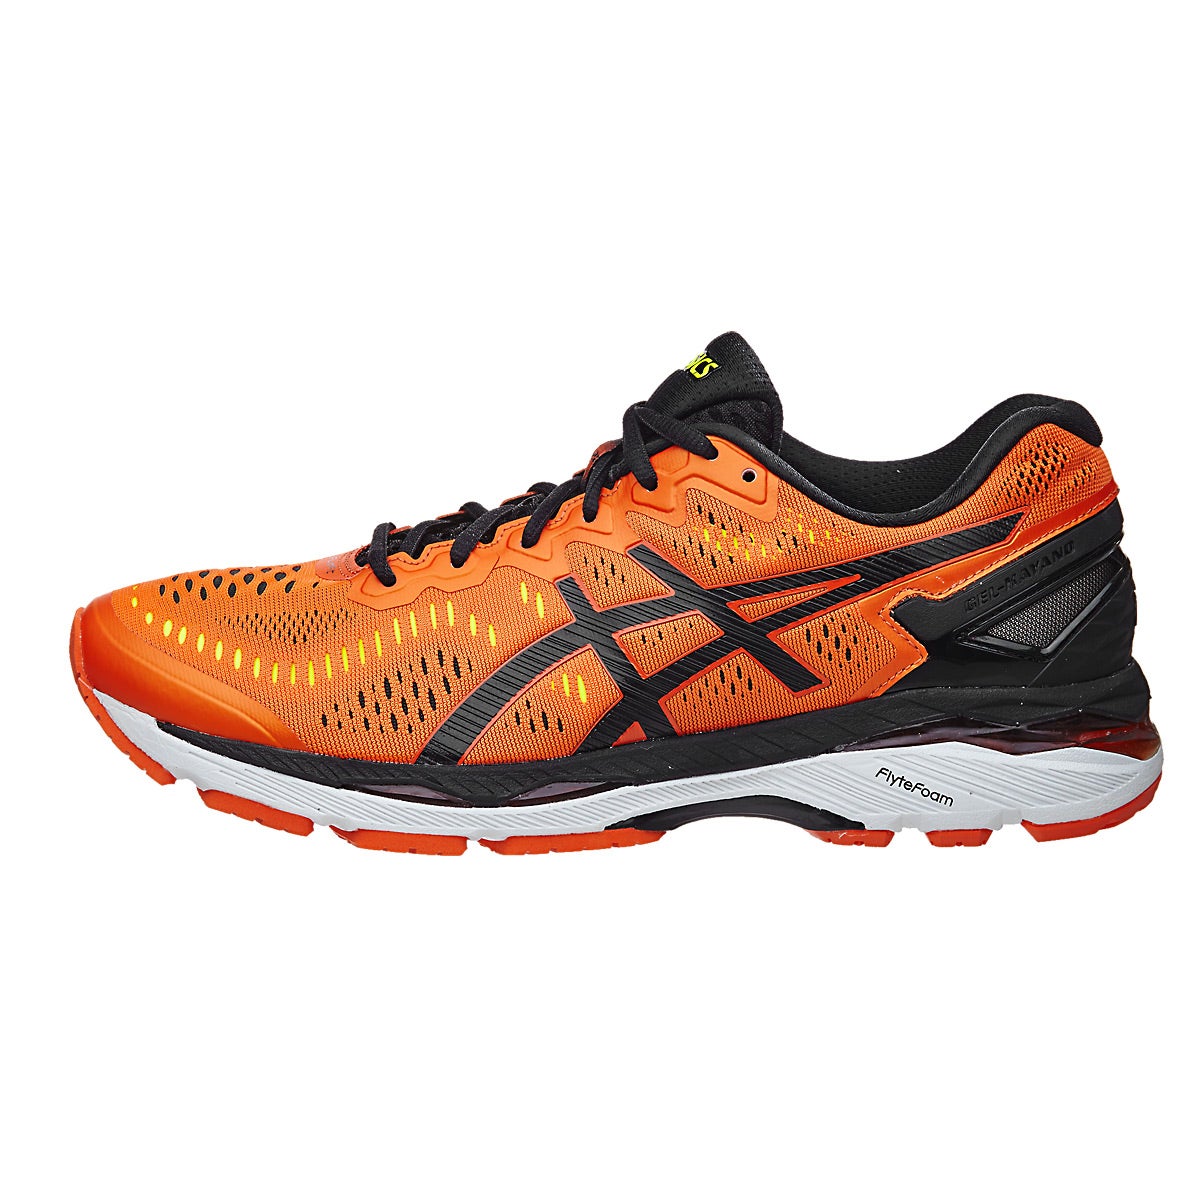 ASICS Gel Kayano 23 Men's Shoes Orange/Black/Yellow 360° View | Running ...